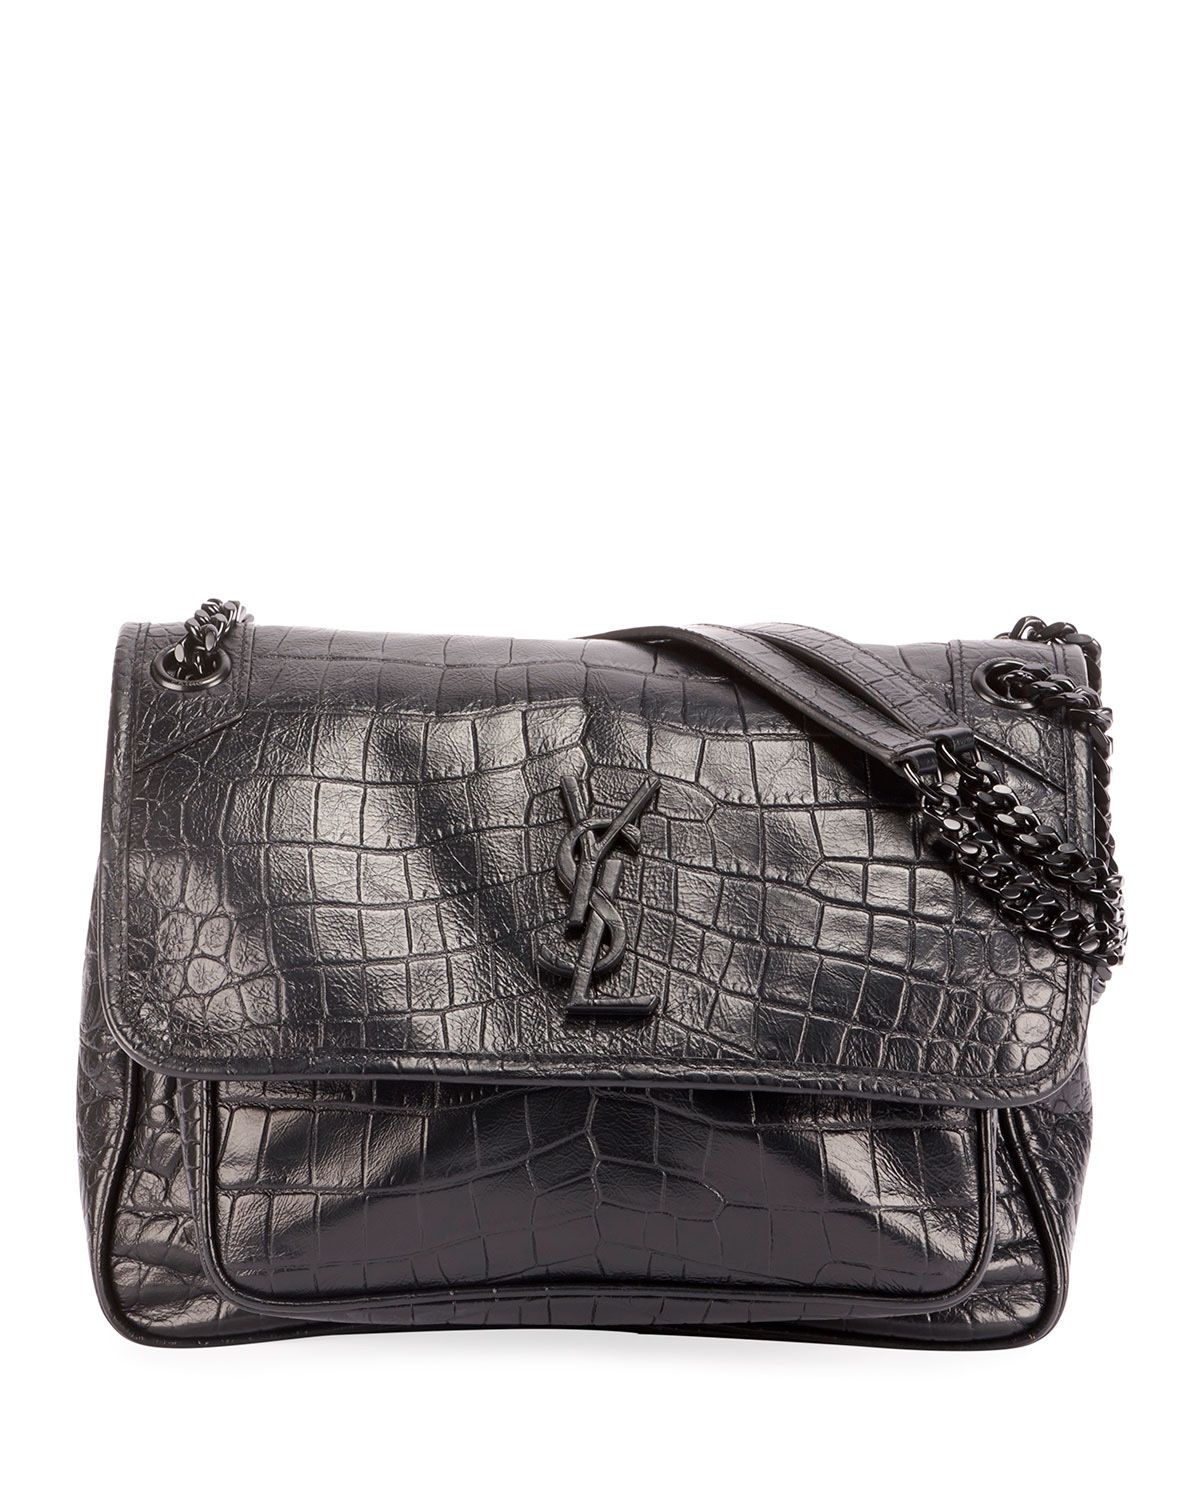 YSL Saint Laurent Niki Black Croc Leather Shoulder Bag